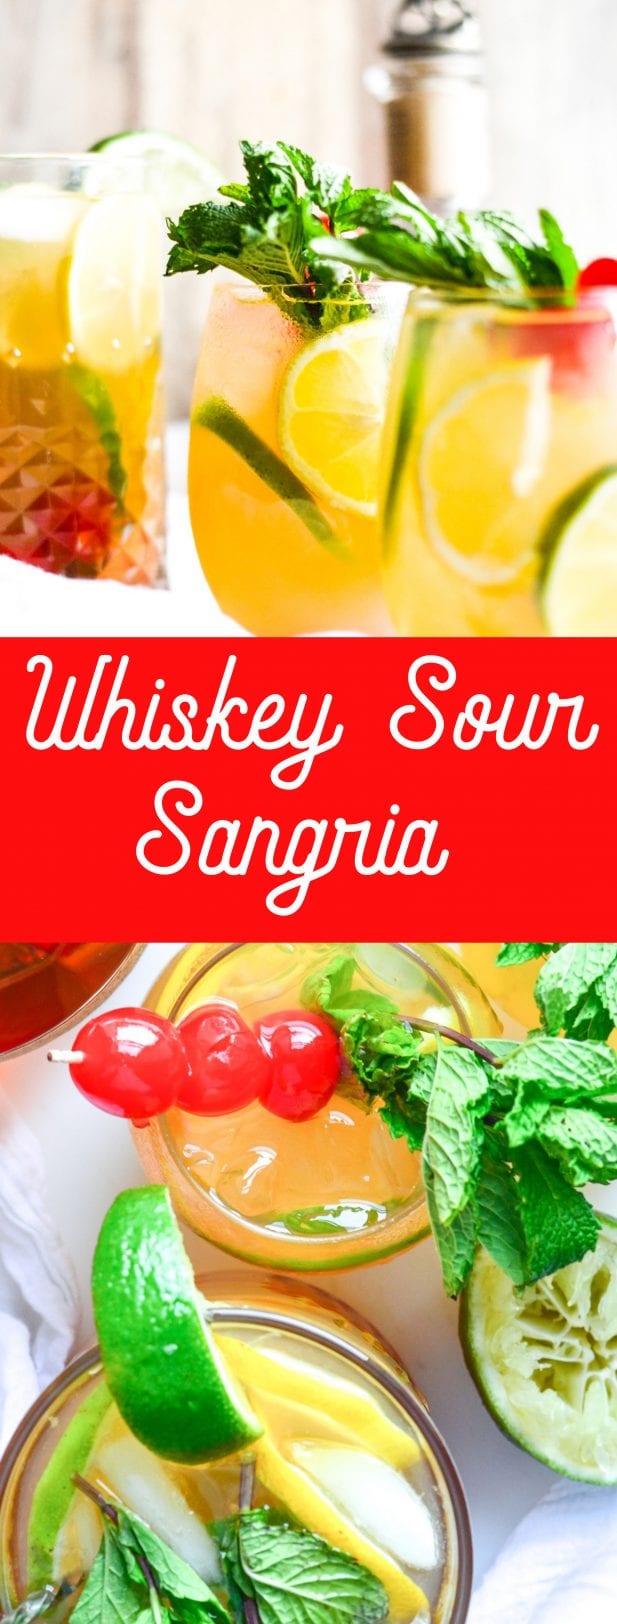 Whiskey Sour Sangria